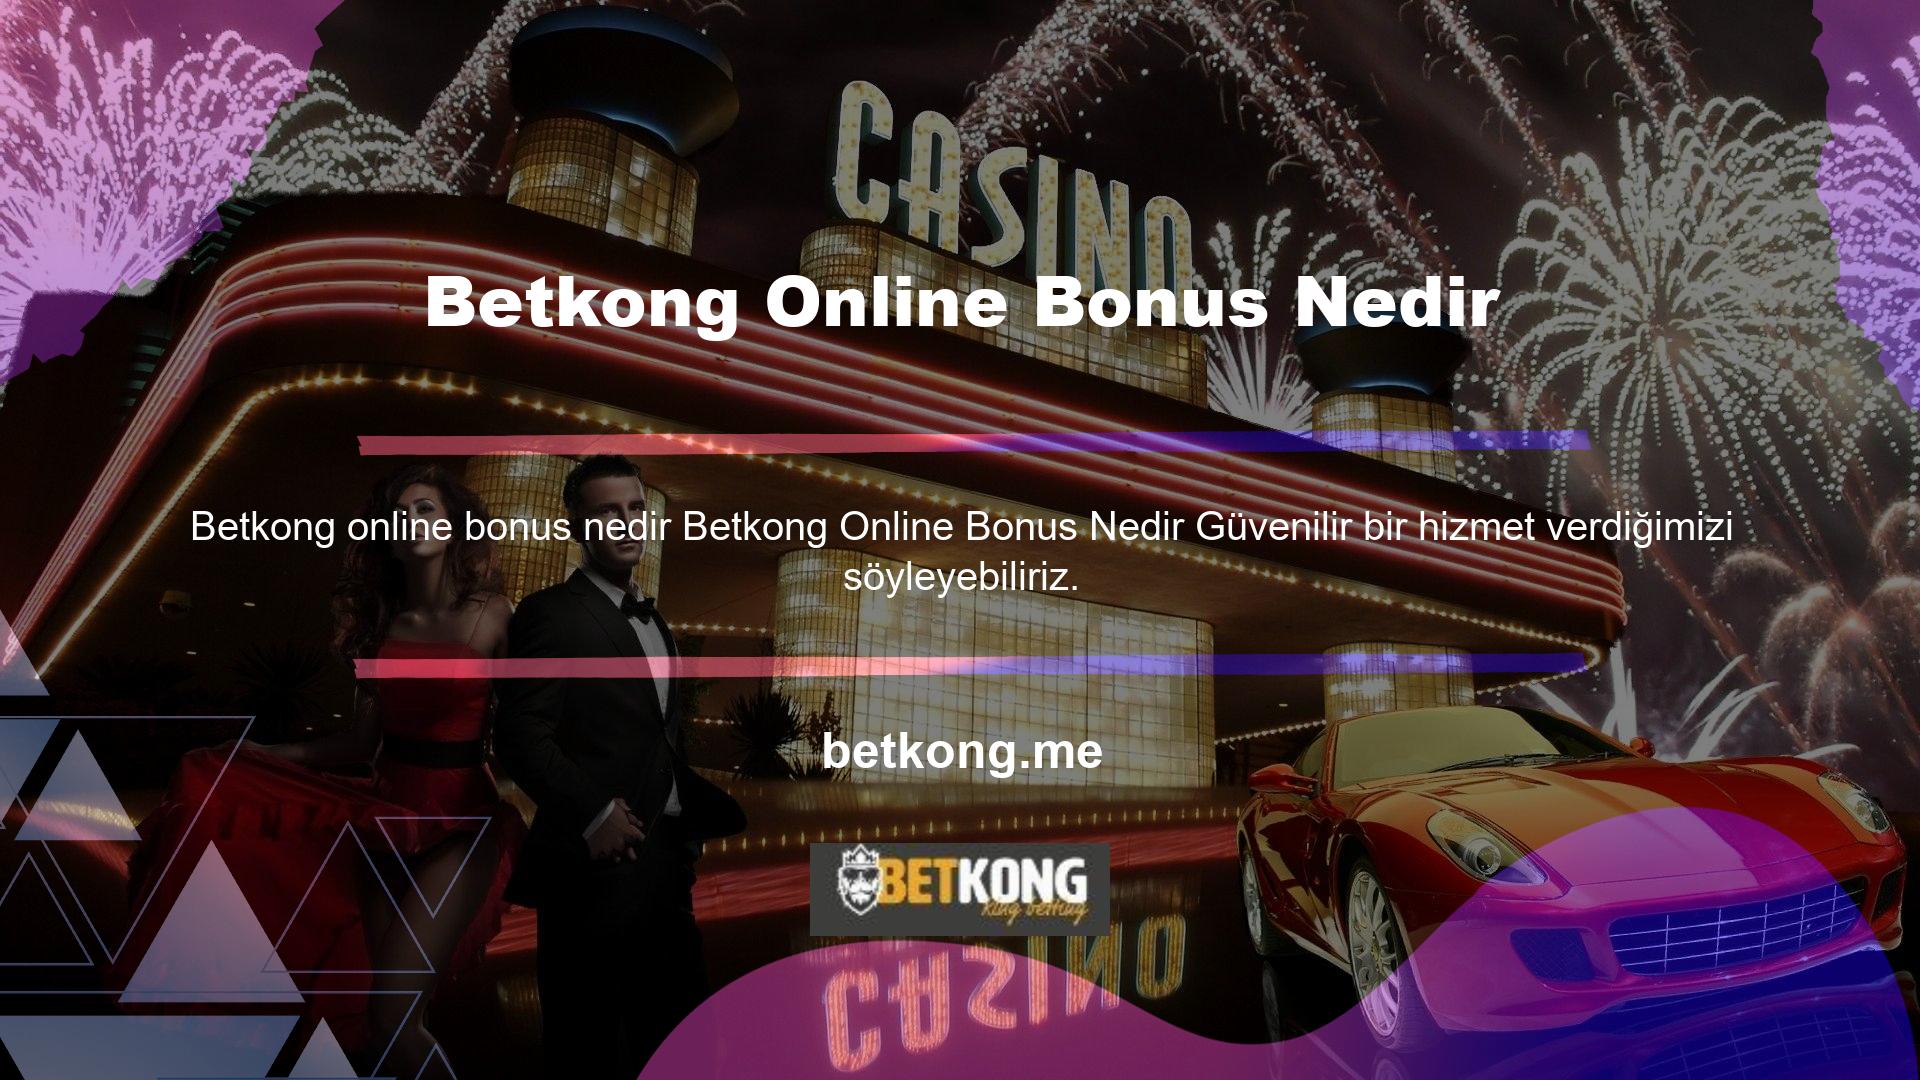 Çevrimdışı bonus kavramı, genellikle çevrimiçi Betkong deneyimi olmayan ilk kez Betkong oynayan bahisçiler arasında büyük merak ve araştırma konularından biri olabilir